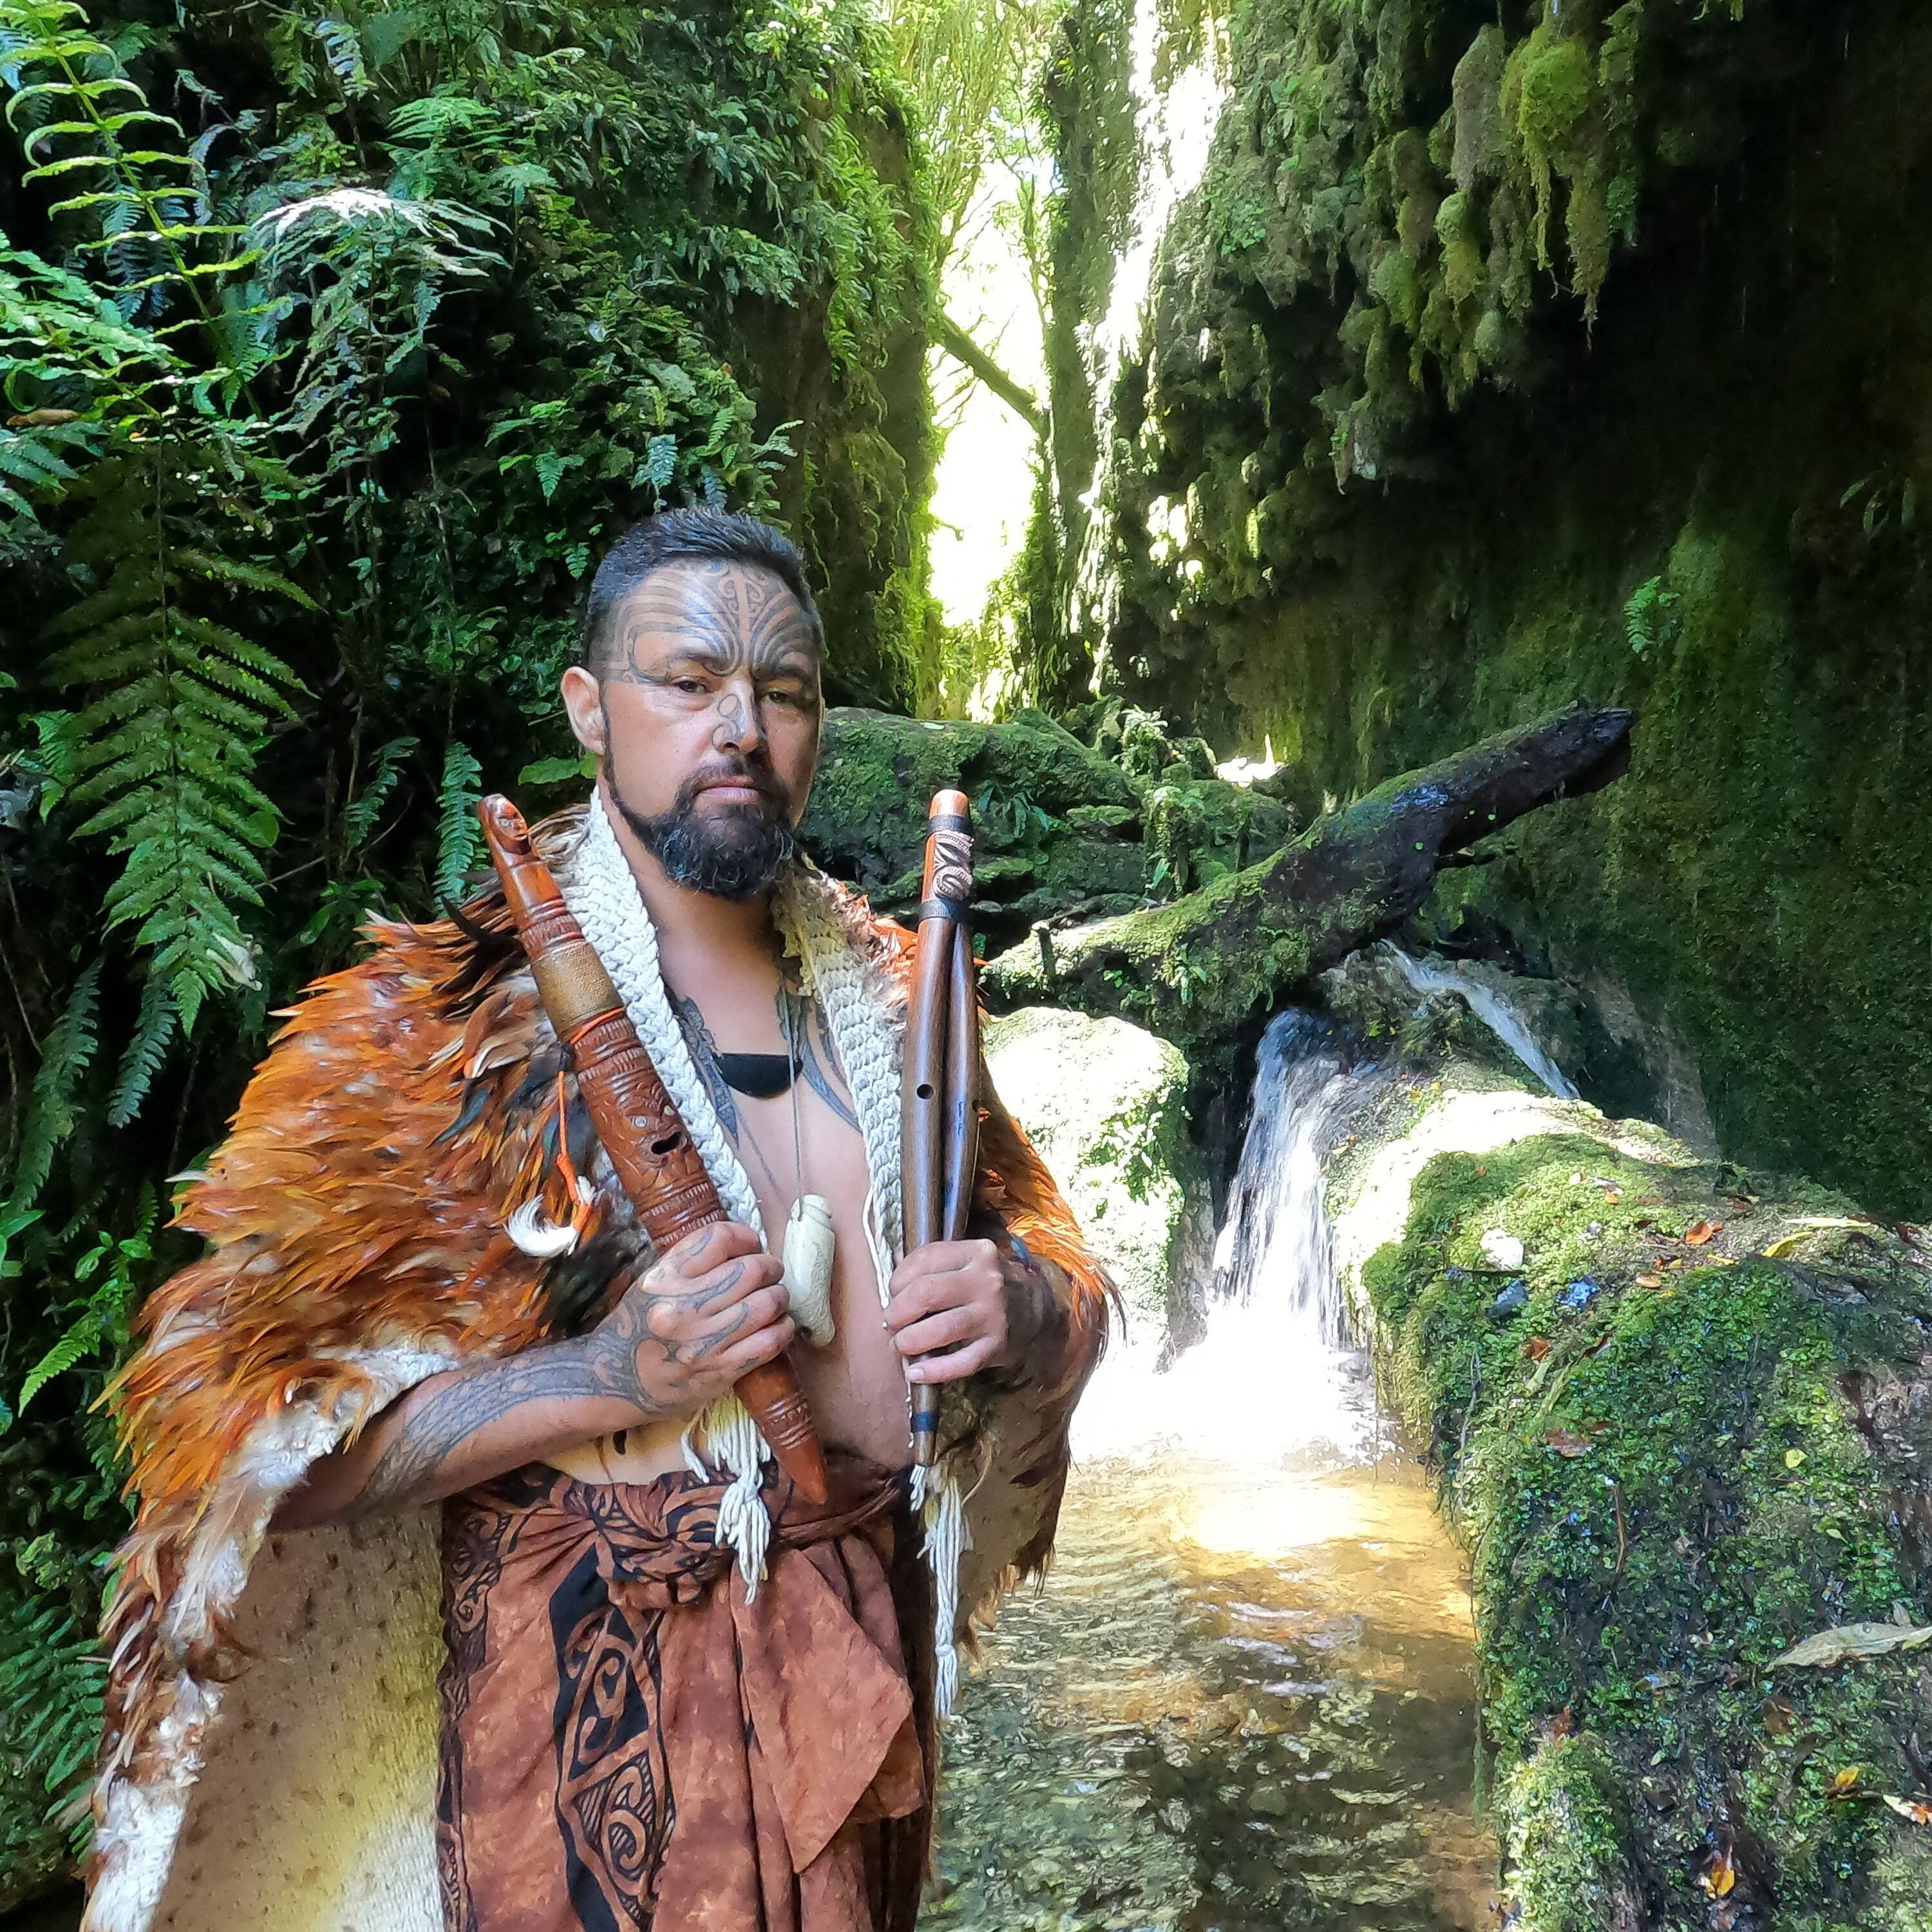 <p><strong>11&ndash;11.40am, 1&ndash;1.40pm and 3&ndash;3.40pm: Power to the Puoro</strong></p>

<p>Whakarongo ki te kaiwhiwhi Grammy, ki a Jerome Kavanagh (Ngāti Maniapoto - Matakore, Mōkai Pātea, Ngāti Kahungunu, Ngāti Rangi - Awa Whanganui, Ngāti Tūwharetoa, Caomh&aacute;nach), e whakaatu ana i te kohinga taonga puoro o tōna whānau, e 50 neke atu te rahi o ngā taonga i Power to the Puoro.</p>

<p>Ko Jerome me tāna hoa rangatira, a Ruiha, ngā kaihanga o Oro Atua, he tūmomo wheako puoro e whakahaumanu ana i te mahi whakaoranga o te taonga puoro hei rongoā i Aotearoa, ā, puta ki te ao.</p>

<p>Listen to Grammy Award winner Jerome Kavanagh (Ngāti Maniapoto &ndash; Matakore, Mōkai Pātea, Ngāti Kahungunu, Ngāti Rangi &ndash; Awa Whanganui, Ngāti Tūwharetoa, Caomh&aacute;nach) showcase his whānau collection of over 50 taonga puoro (traditional Māori musical instruments) in Power to the Puoro.</p>

<p>Jerome and his hoa rangatira (partner), Ruiha, are the creators of Oro Atua, a music experience which revives and shares the rongoā (healing) practice of taonga puoro in Aotearoa and internationally.</p>

<p>Image credit: Ruiha Turner&nbsp;</p>